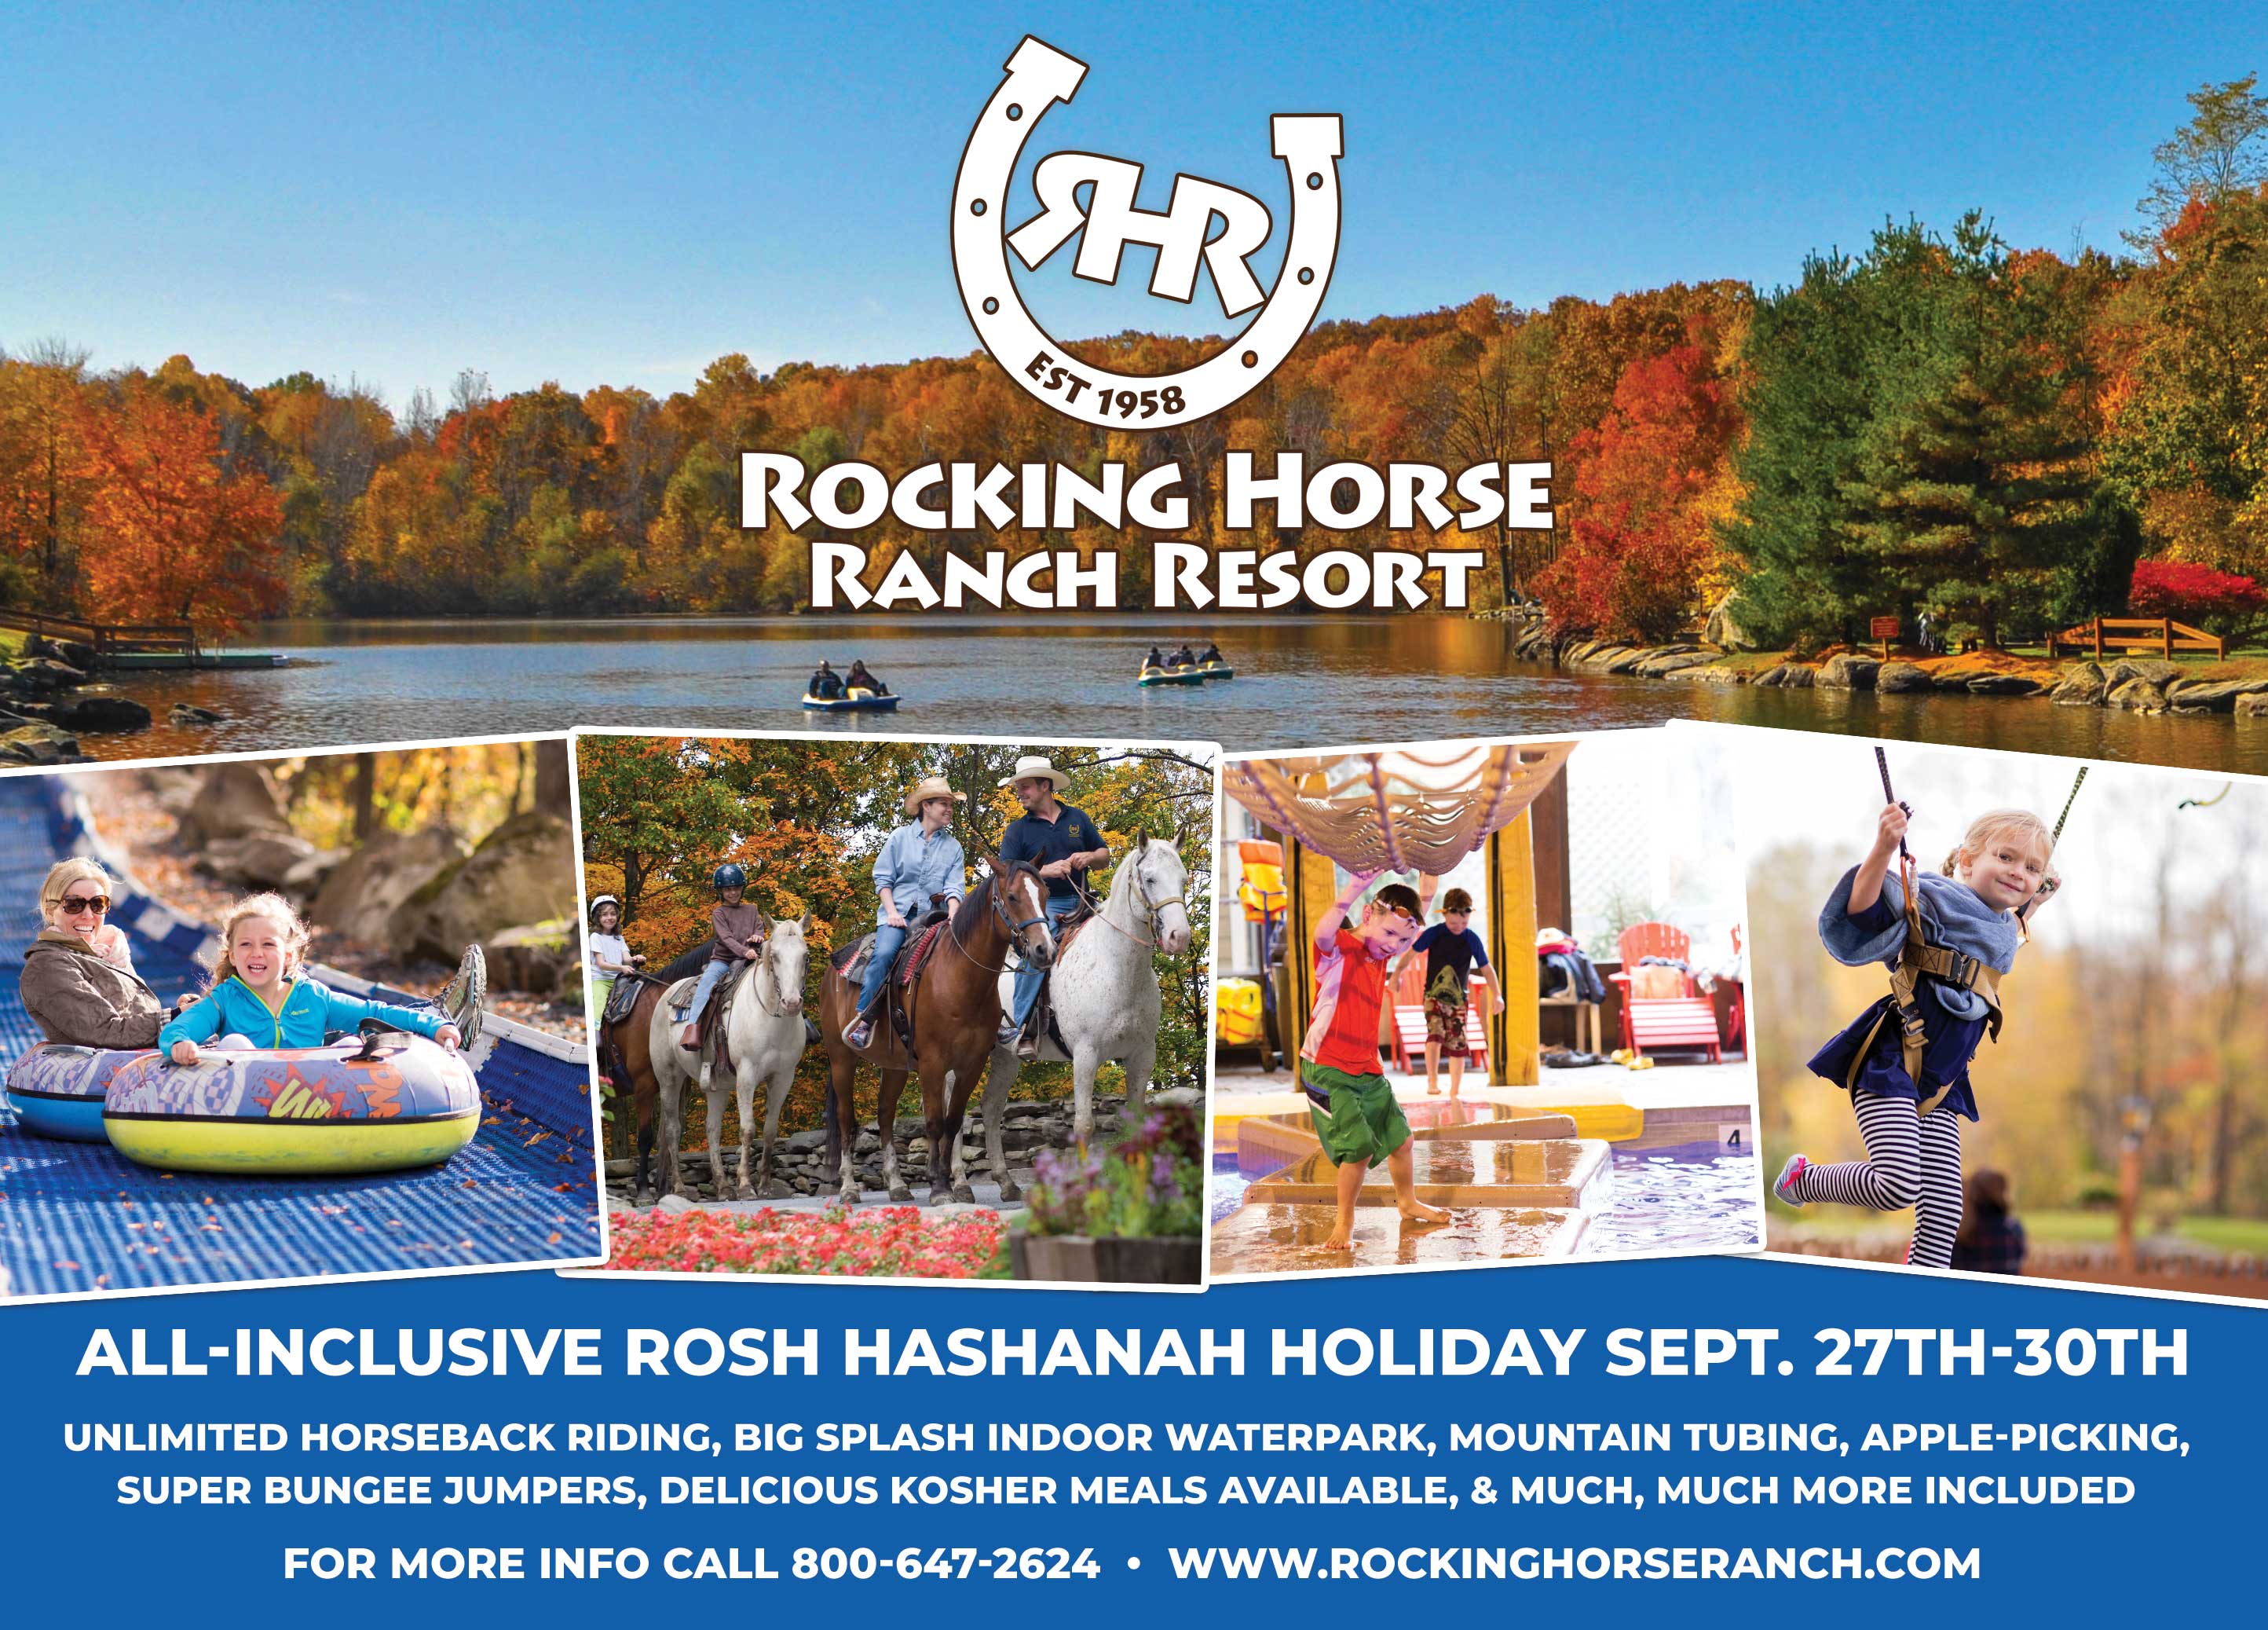 ROSH HASHANAH Rocking Horse Ranch Resort